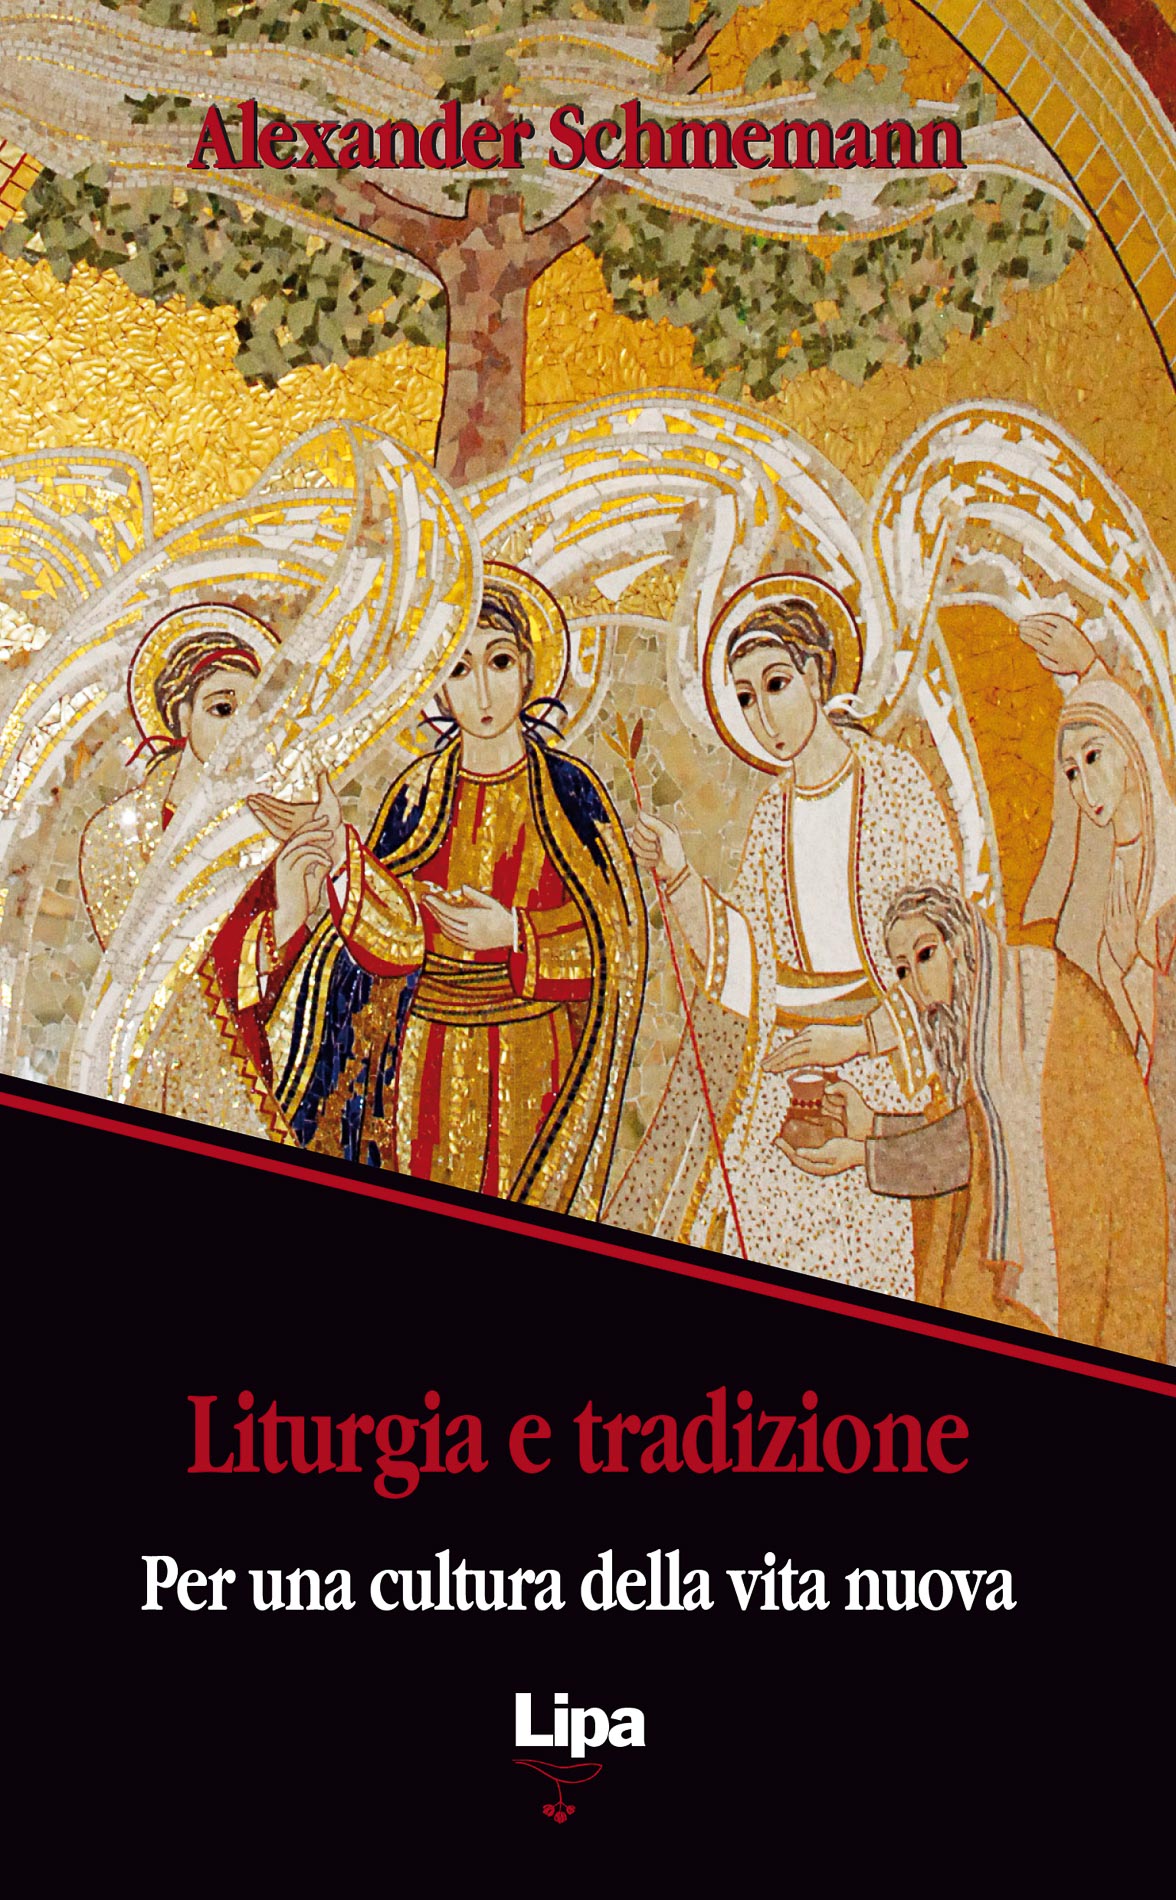 Copertina del libro "Liturgia e tradizione"